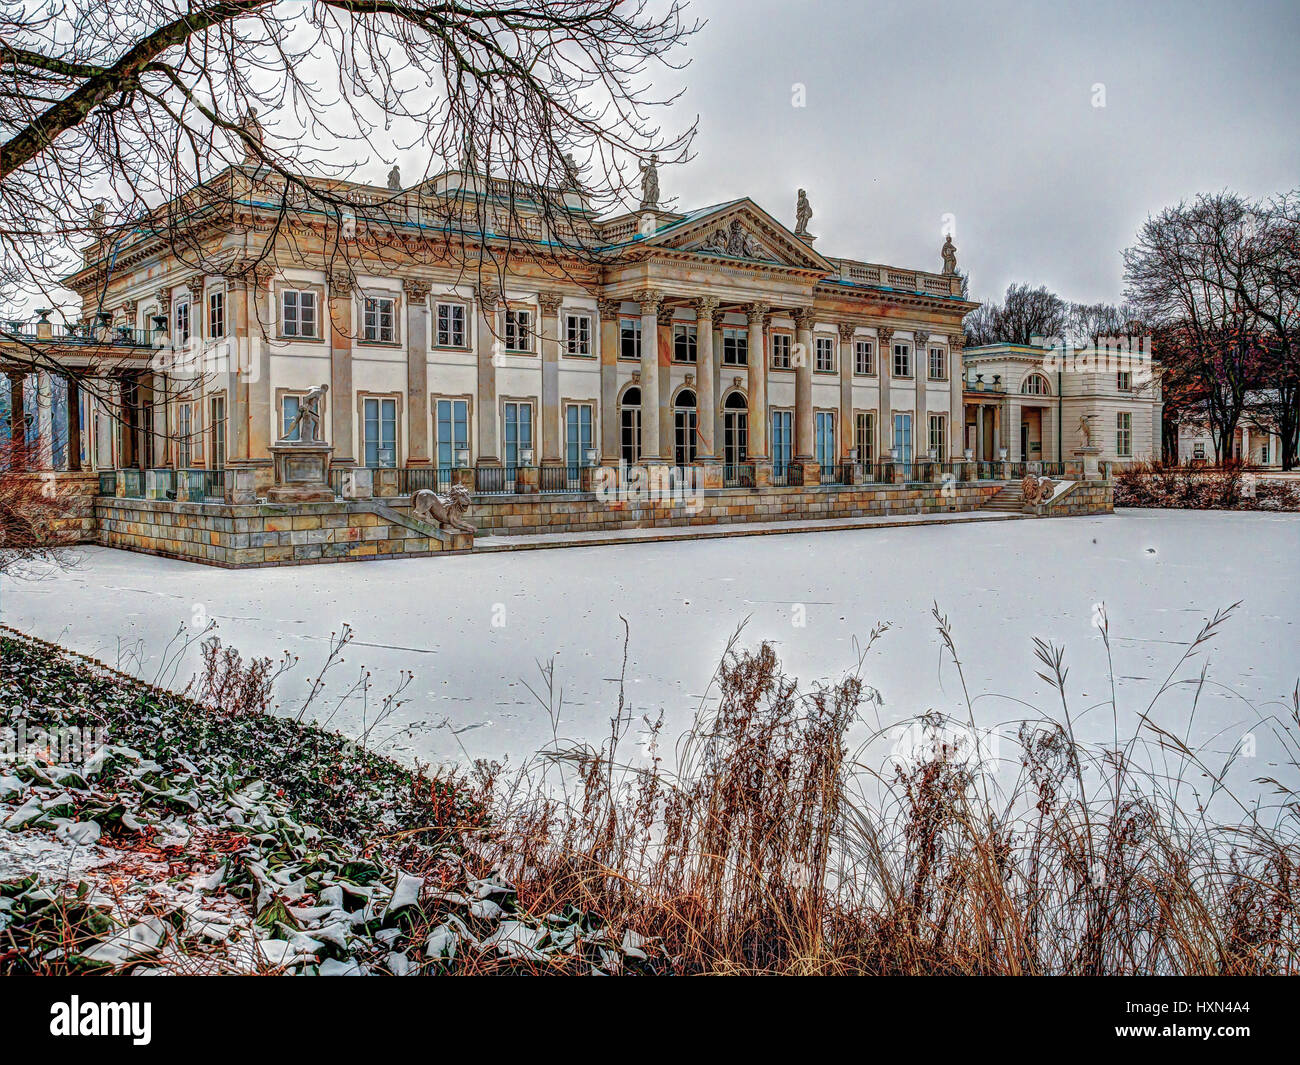 Varsovie, Pologne - janvier 01, 2016 : Le point de vue du "Palais sur l'eau" dans le "Royal de Lazienki park" lors de gelées en hiver Banque D'Images